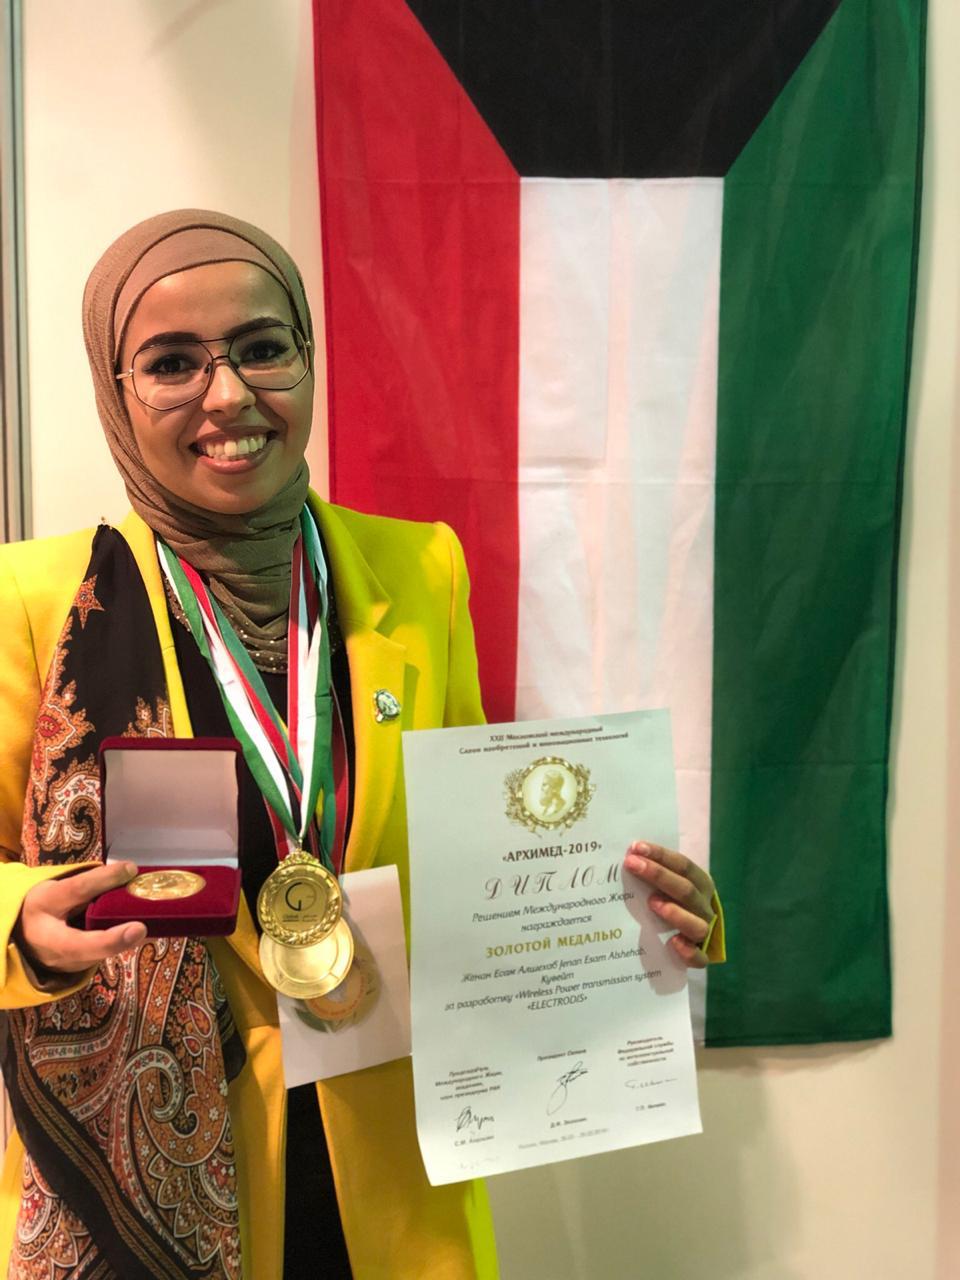 المهندسة الكويتية جنان الشهاب الحاصلة على الميدالية الذهبية مع مرتبة الشرف من معرض ارخميد الدولي للاختراعات والابحاث